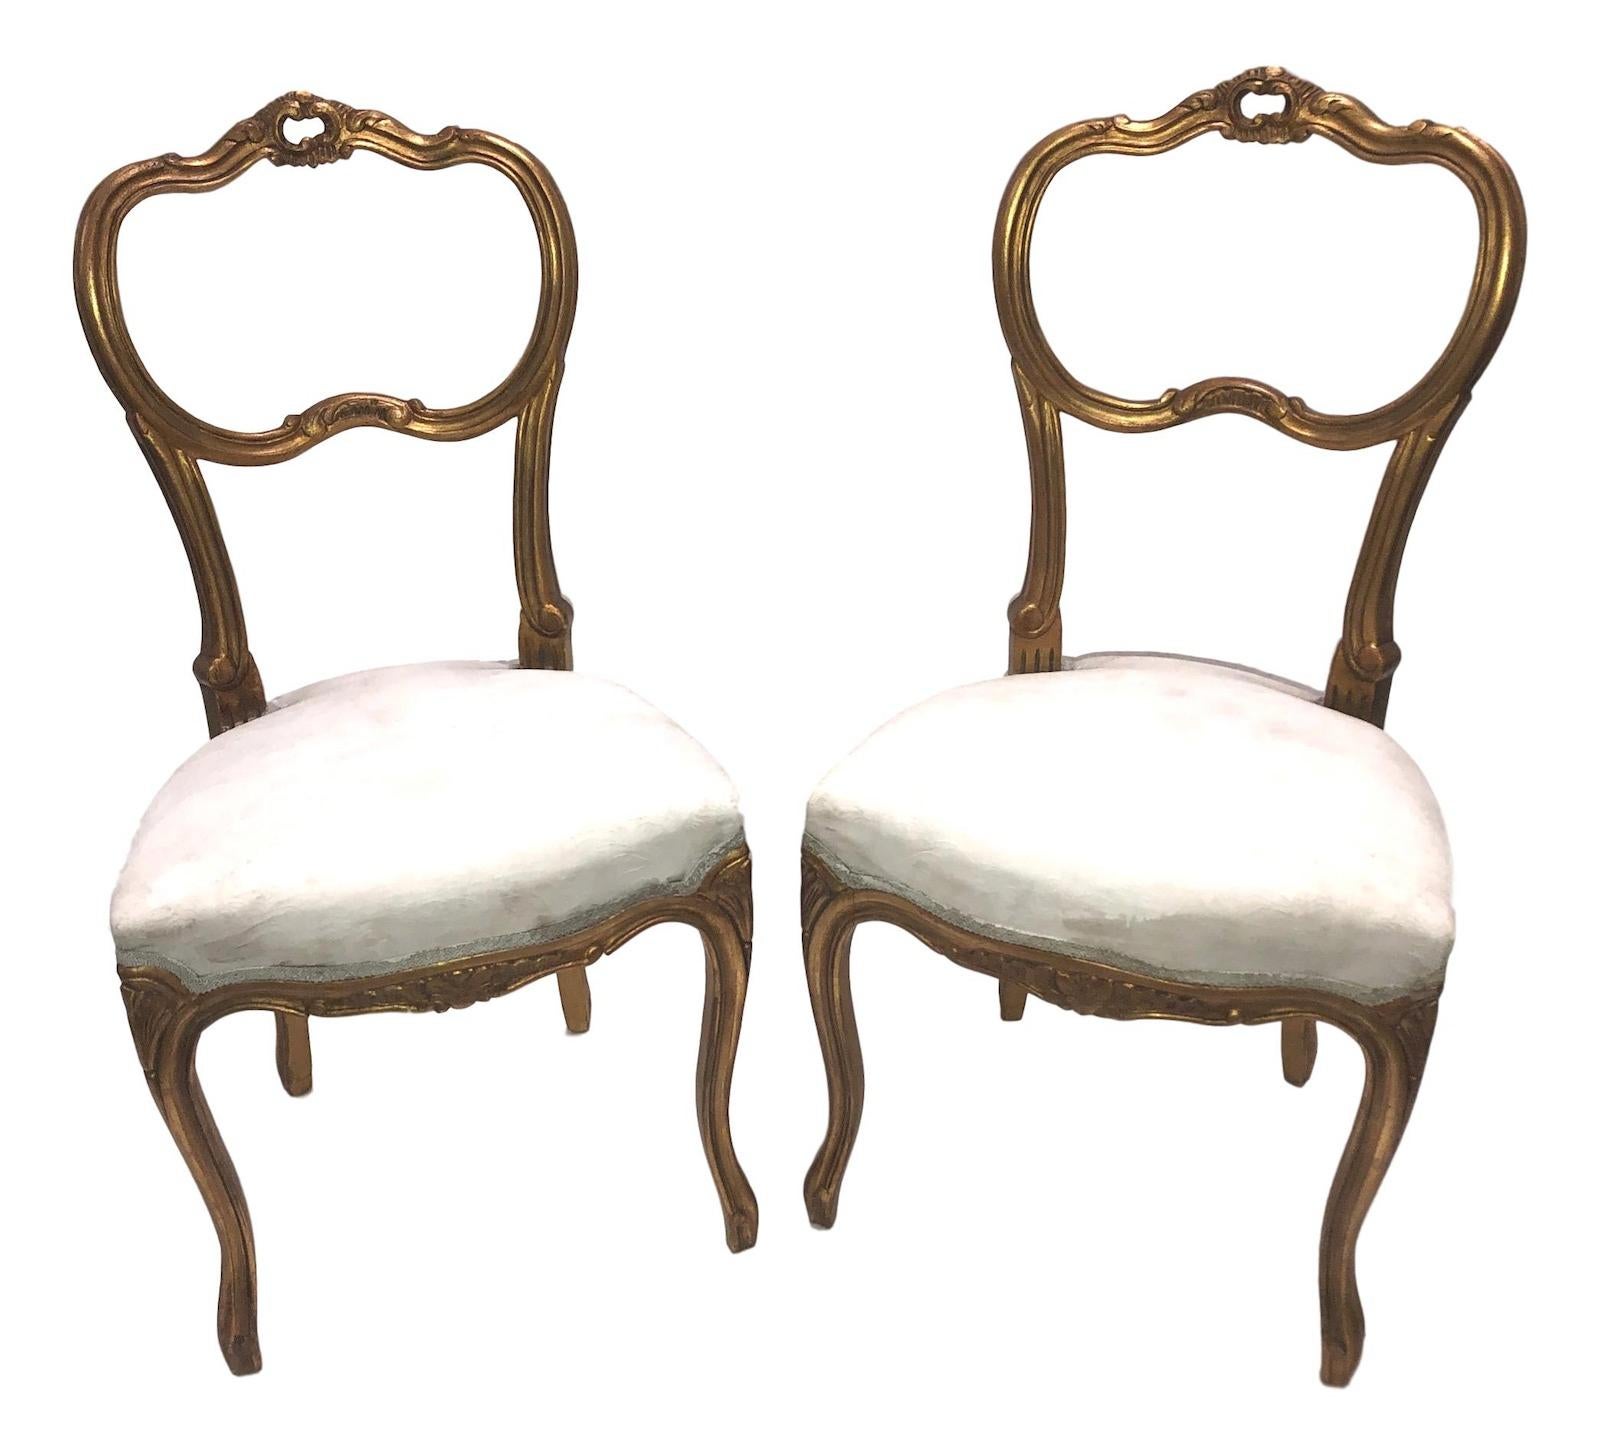 Dies ist ein wunderschönes Paar antiker schwedischer Stühle aus Vergoldungsholz aus der Zeit um 1920.
Das vergoldete Holz hat eine schöne Farbe, jeder Stuhl hat eine muschelgeschnitzte, gekrönte Oberleiste mit Akanthus umklammerten Stützen.
Sie